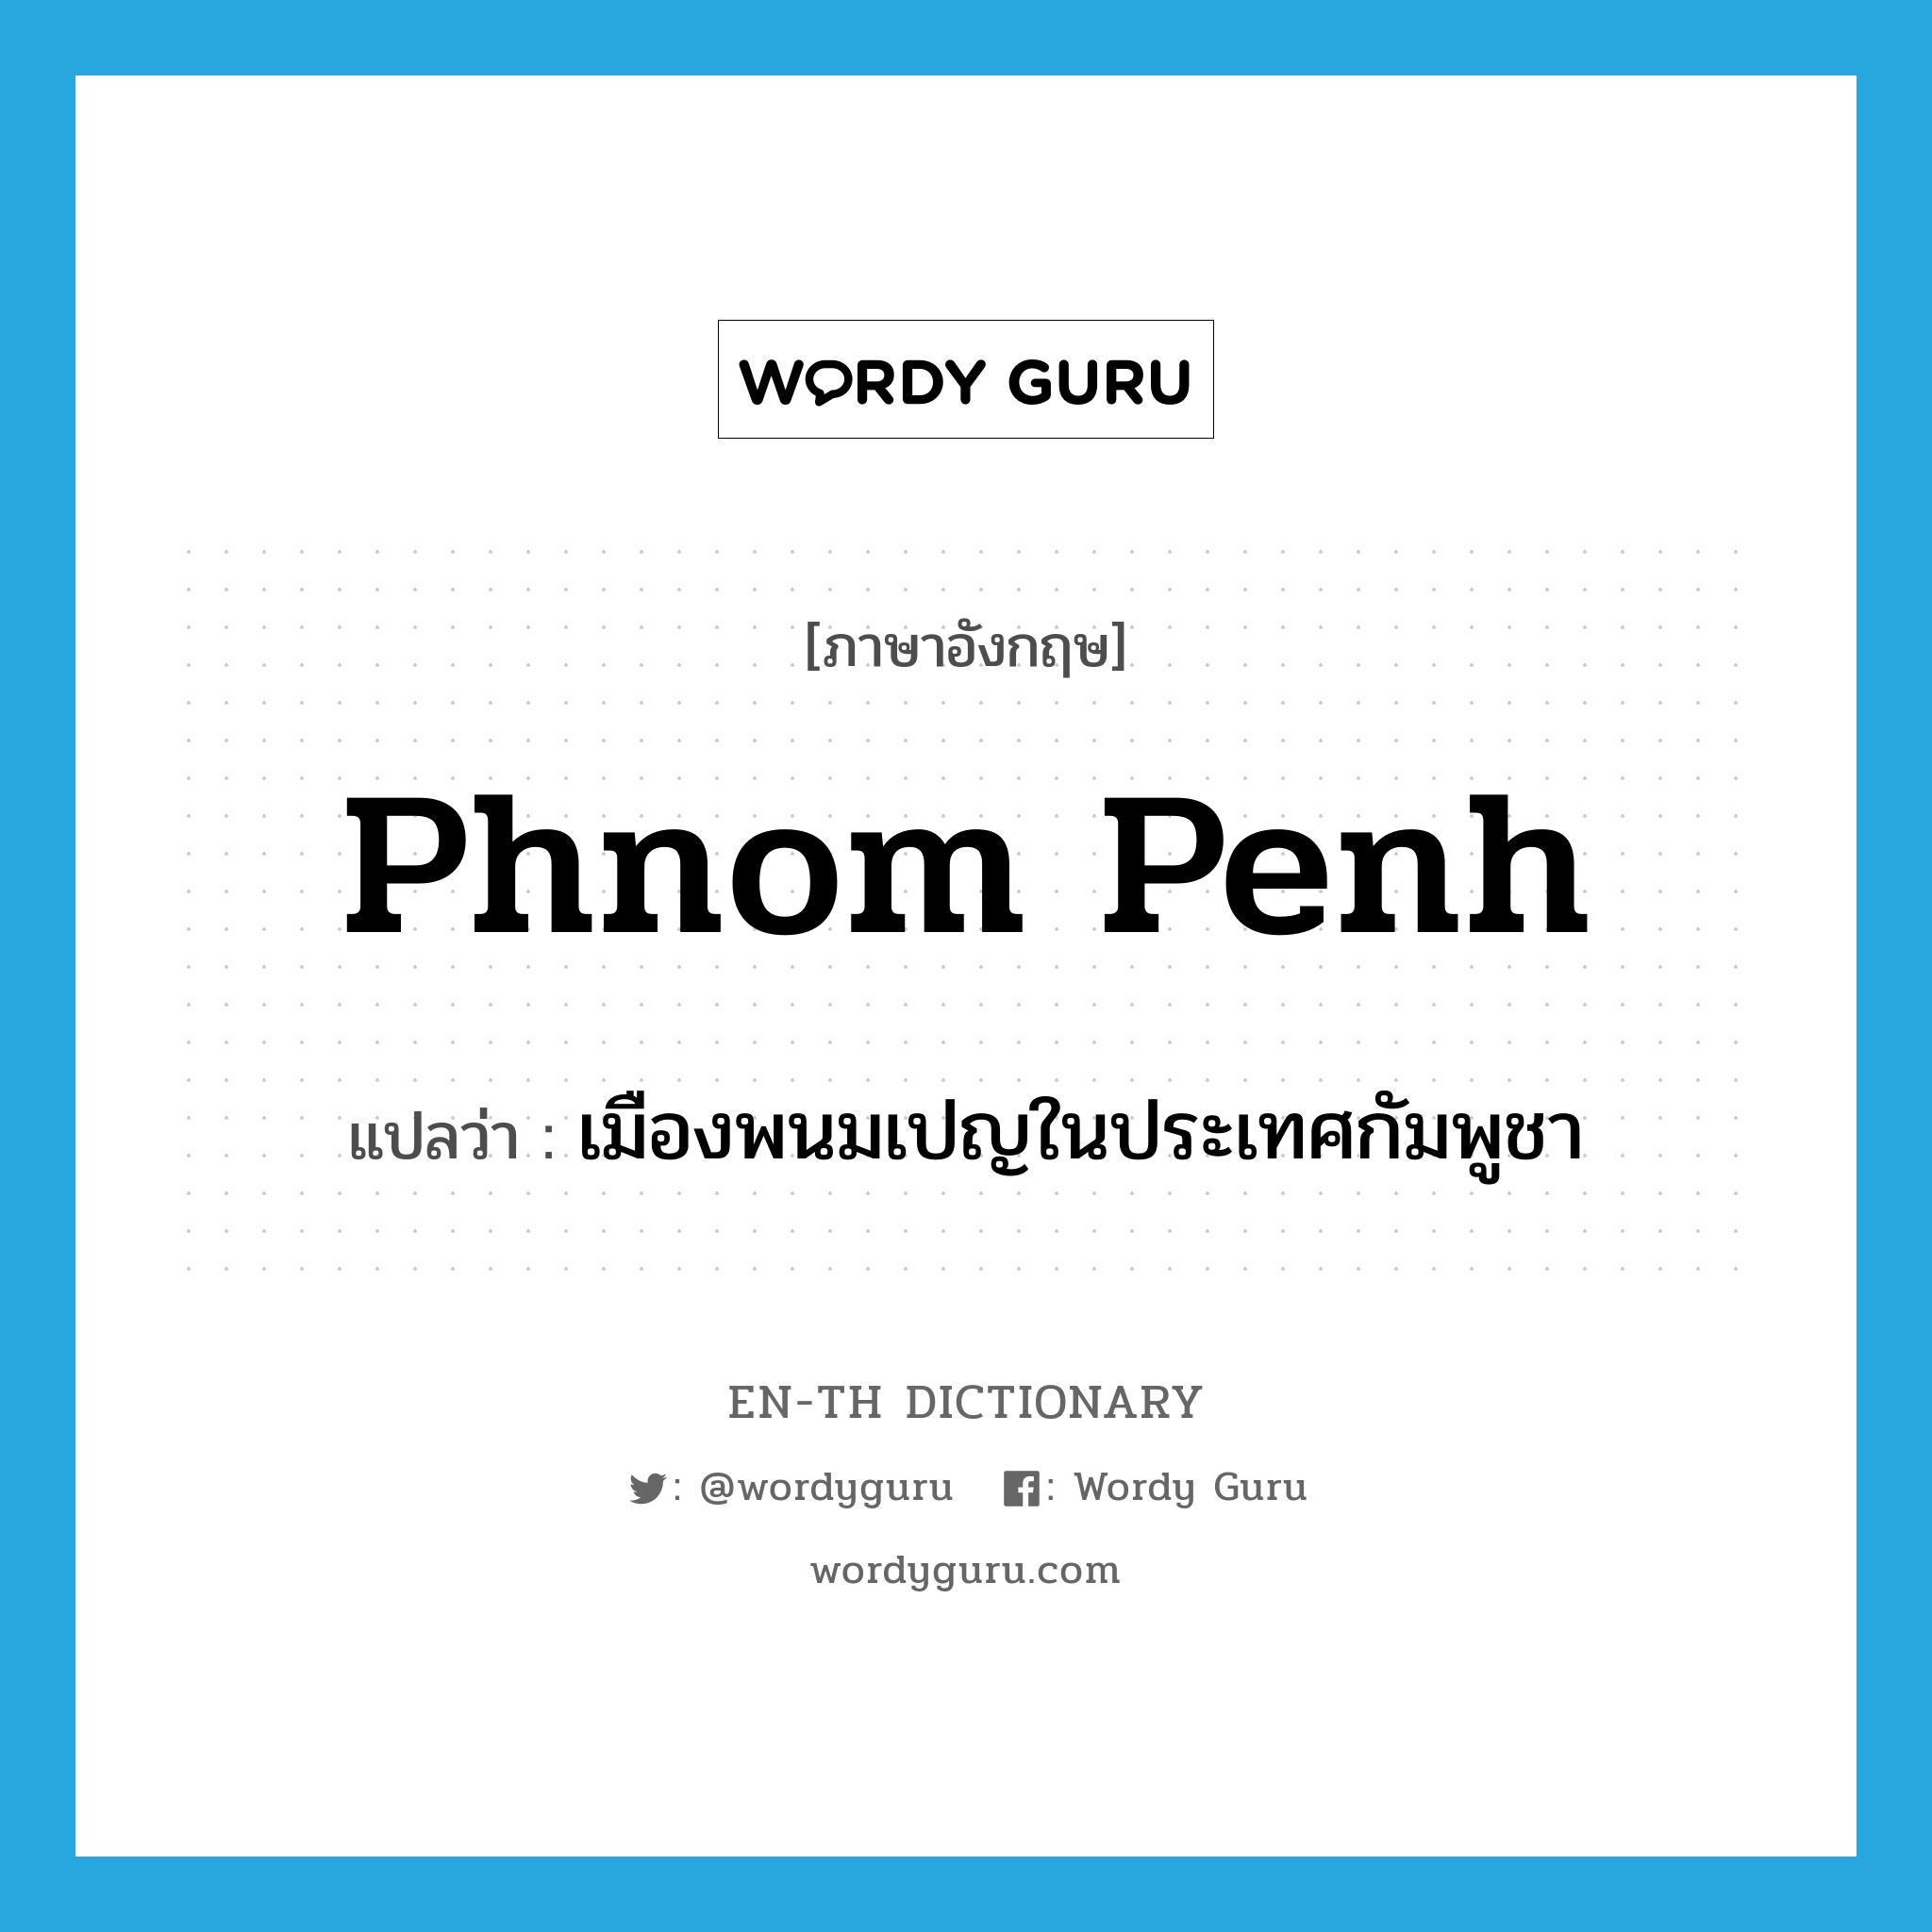 เมืองพนมเปญในประเทศกัมพูชา ภาษาอังกฤษ?, คำศัพท์ภาษาอังกฤษ เมืองพนมเปญในประเทศกัมพูชา แปลว่า Phnom Penh ประเภท N หมวด N